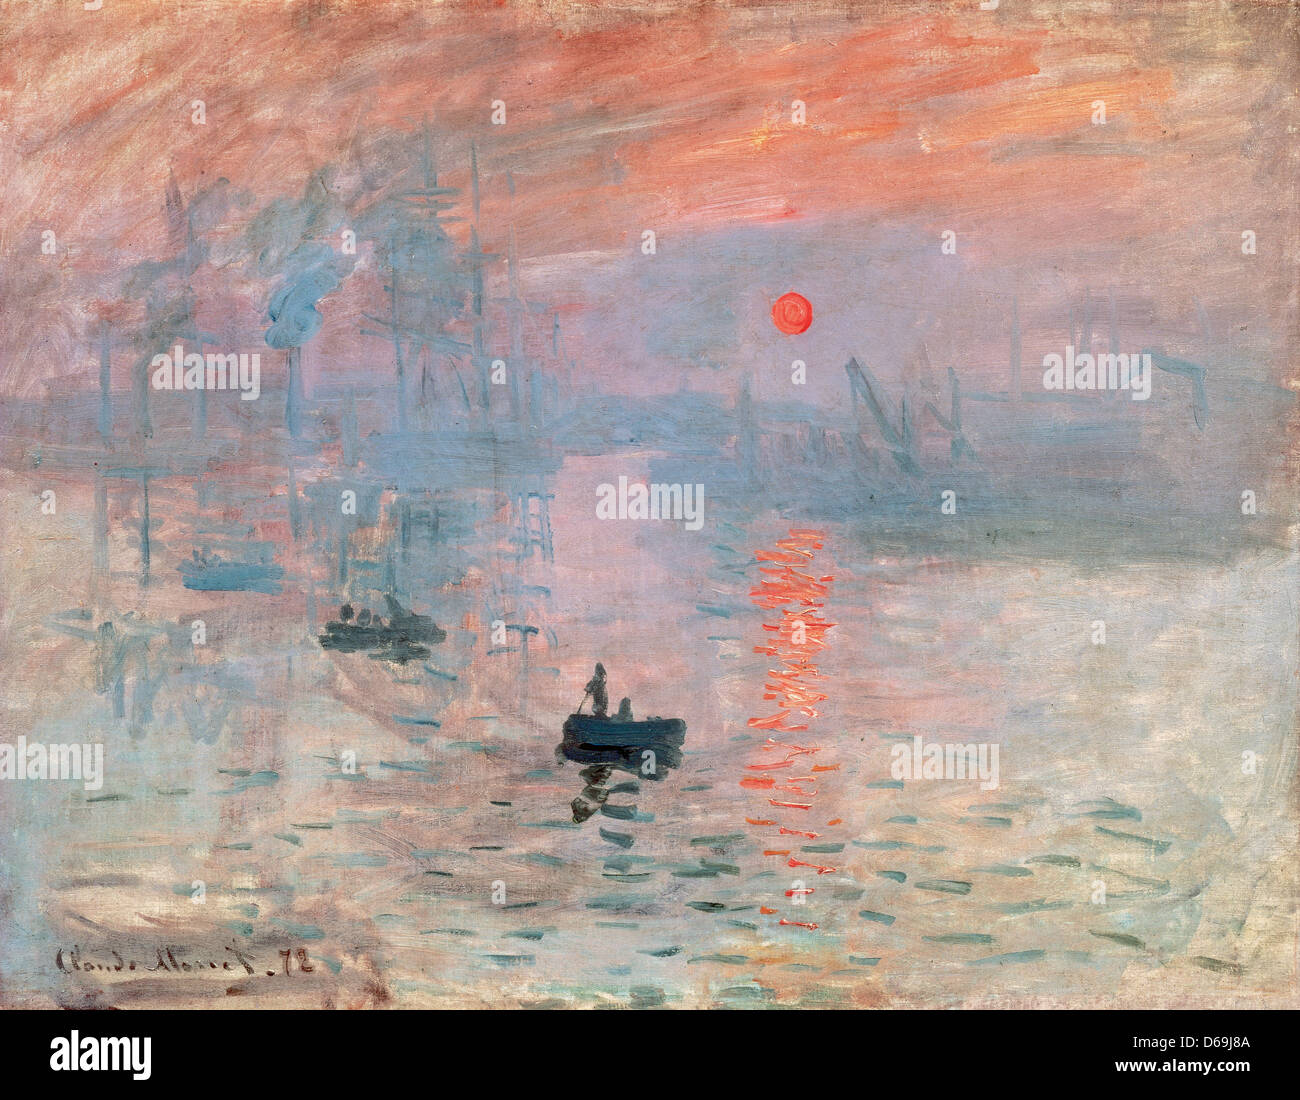 Claude Monet (1840-1926). Sunrise (Impression, soleil levant). 1872. Oil on canvas. Museum of Marmottan Monet. Paris. France. Stock Photo